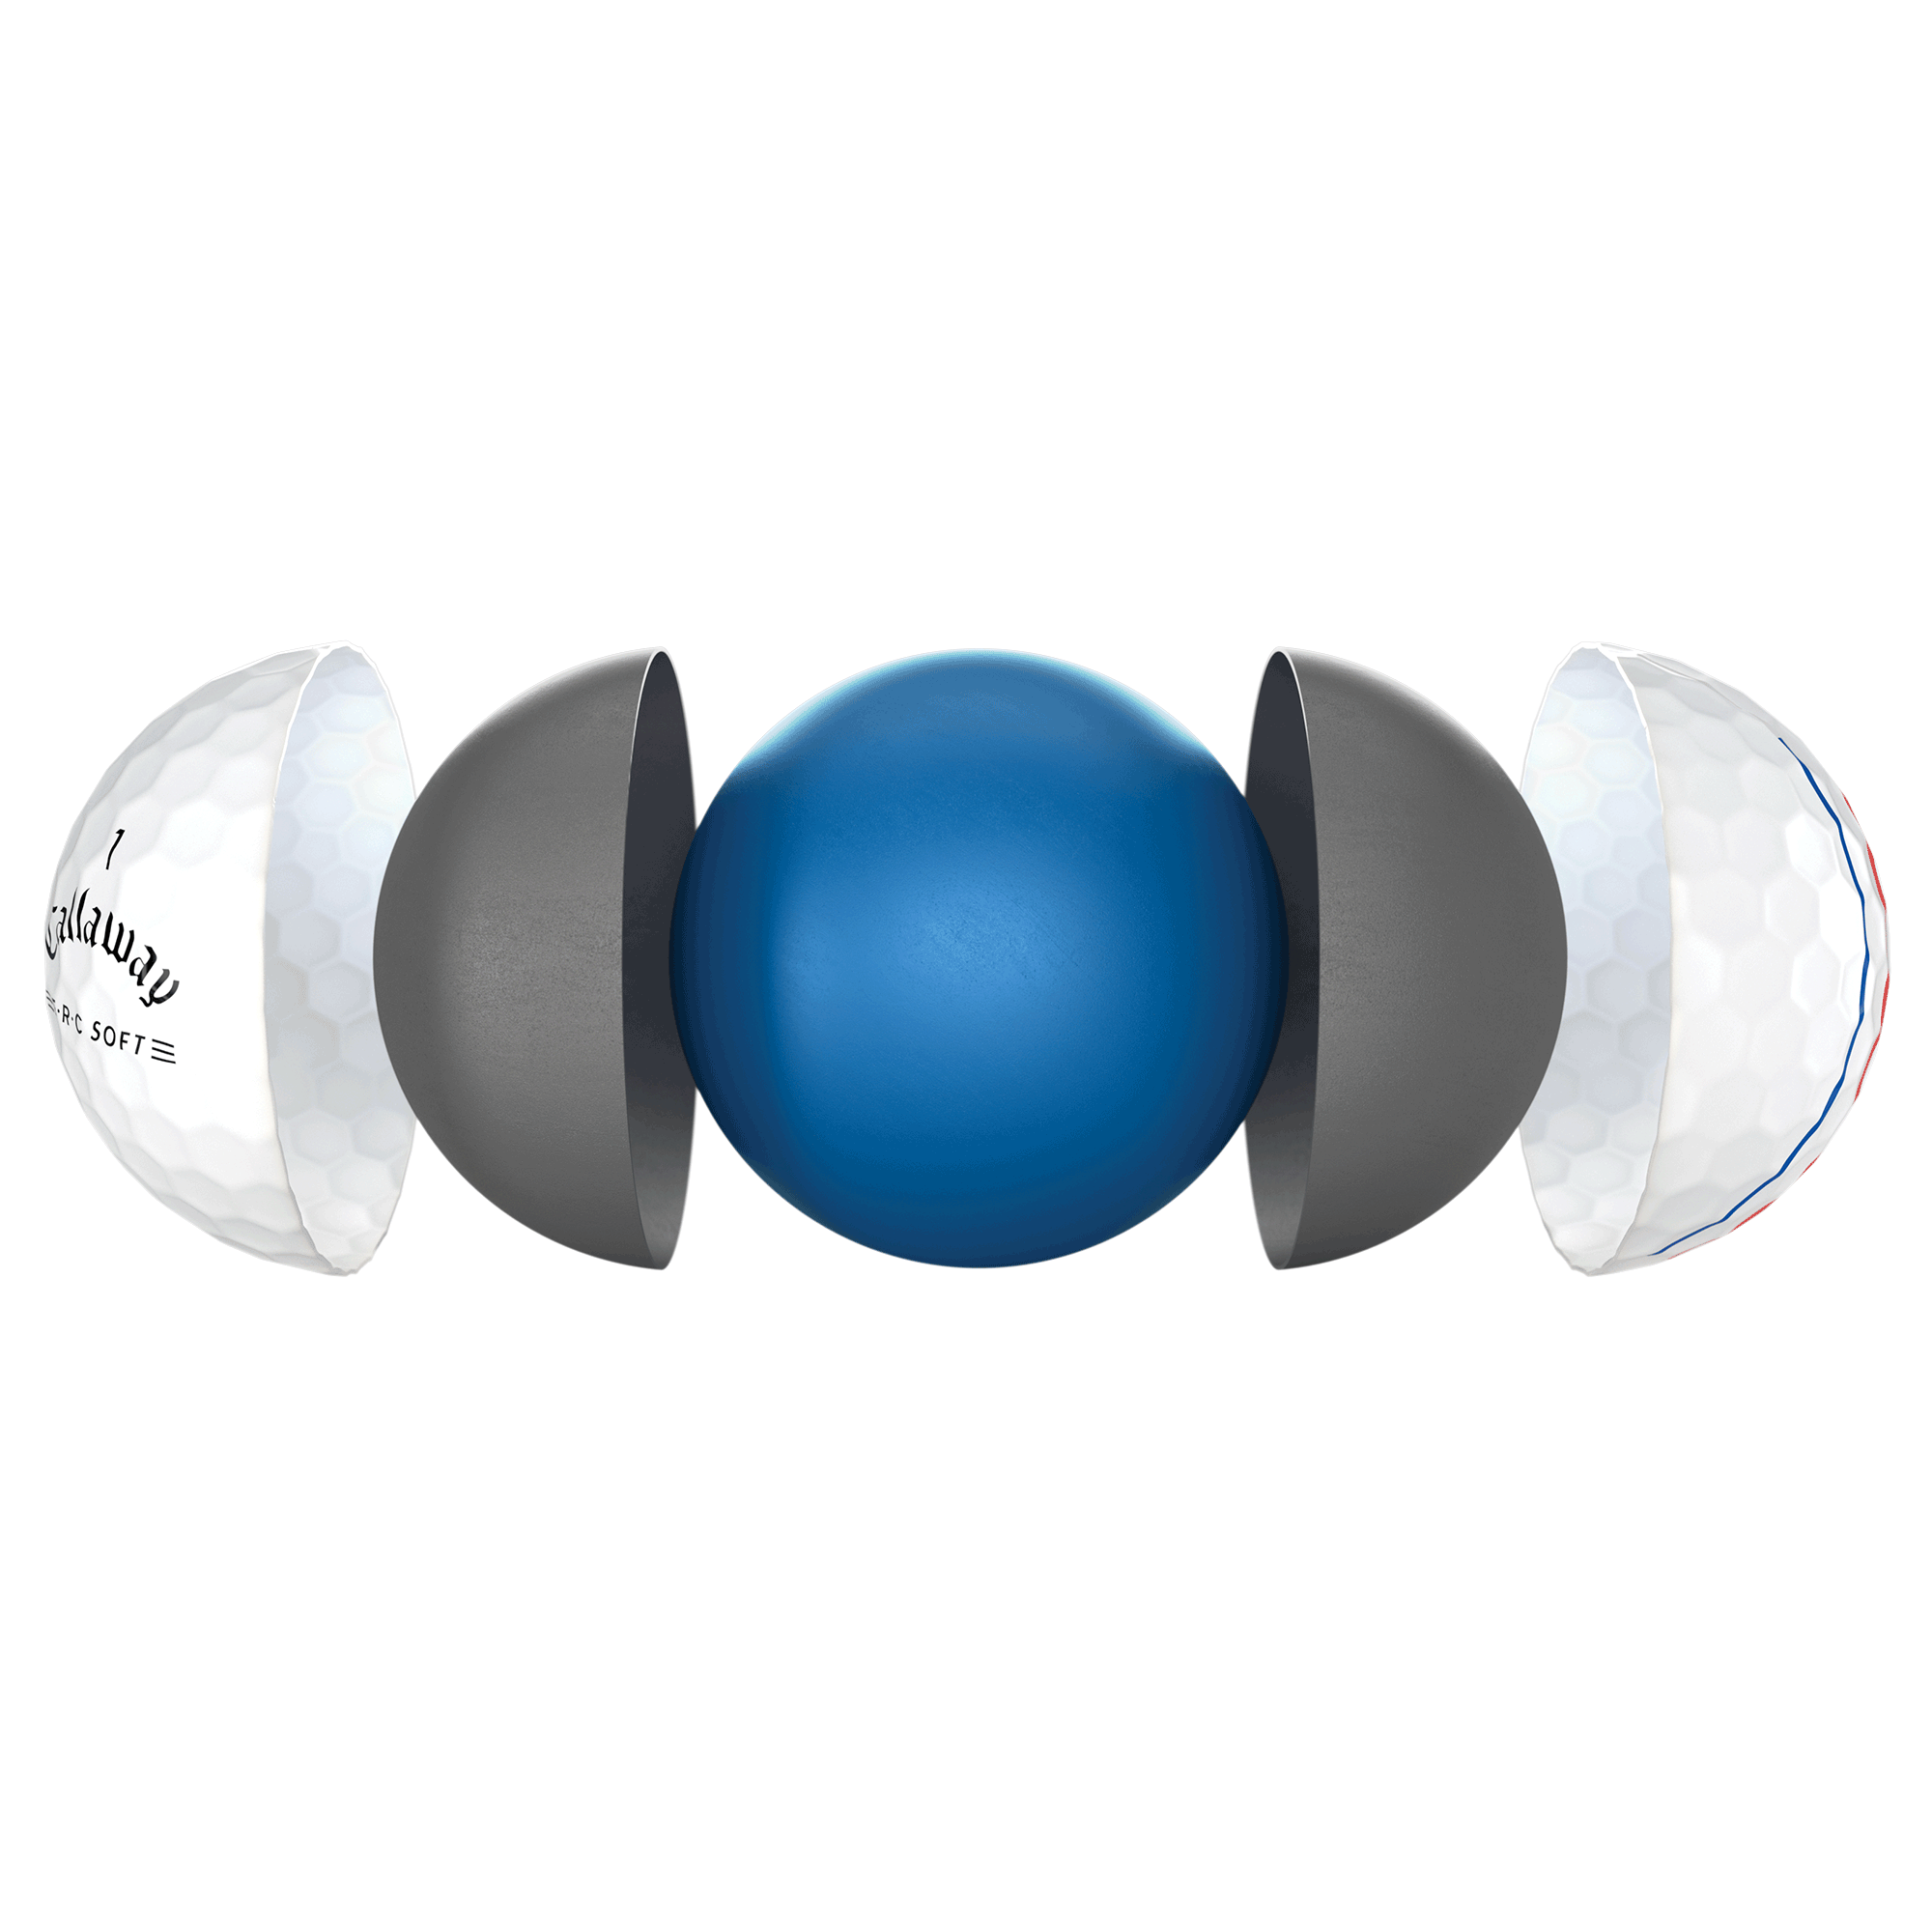 E•R•C Soft golf ball technology breakout image